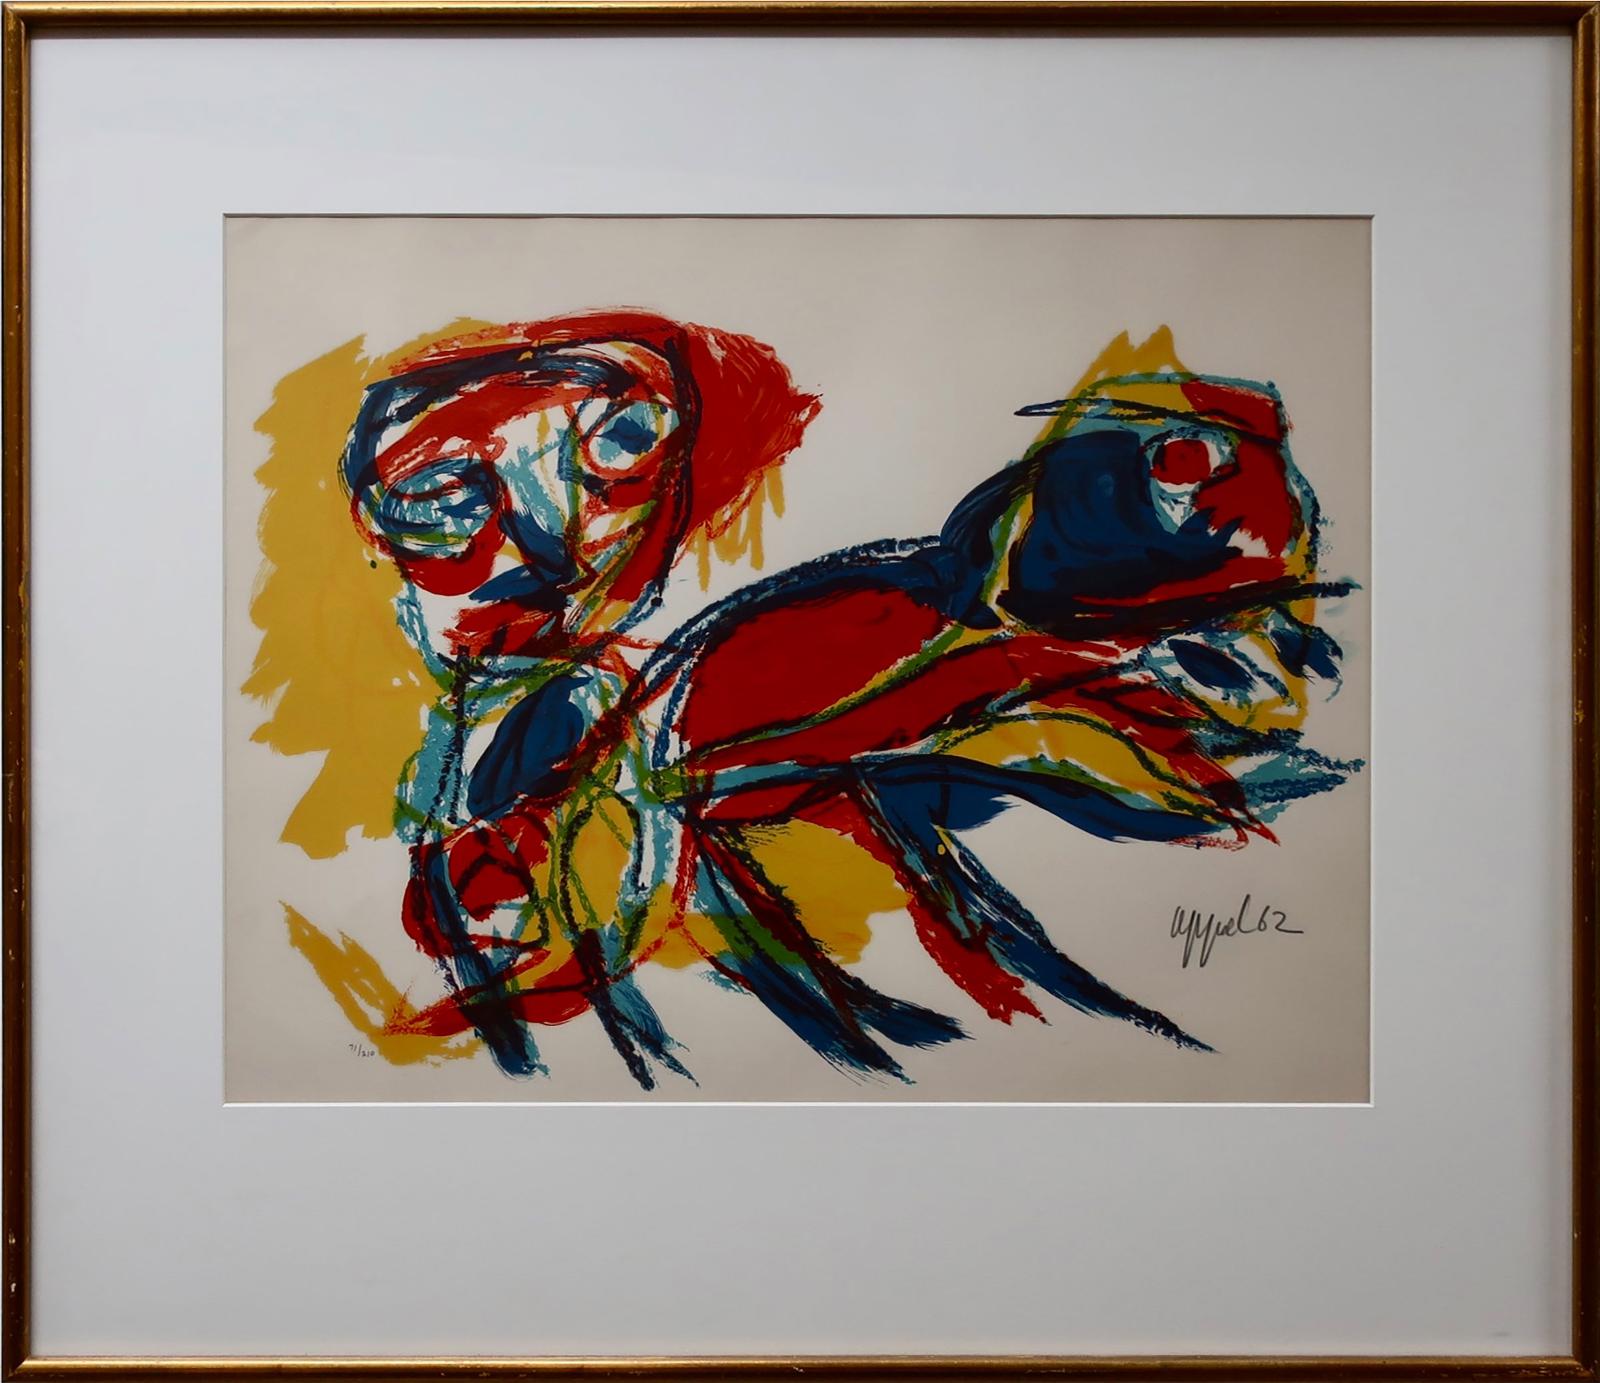 Karel Appel (1921-2006) - Figure Et Animal, 1962